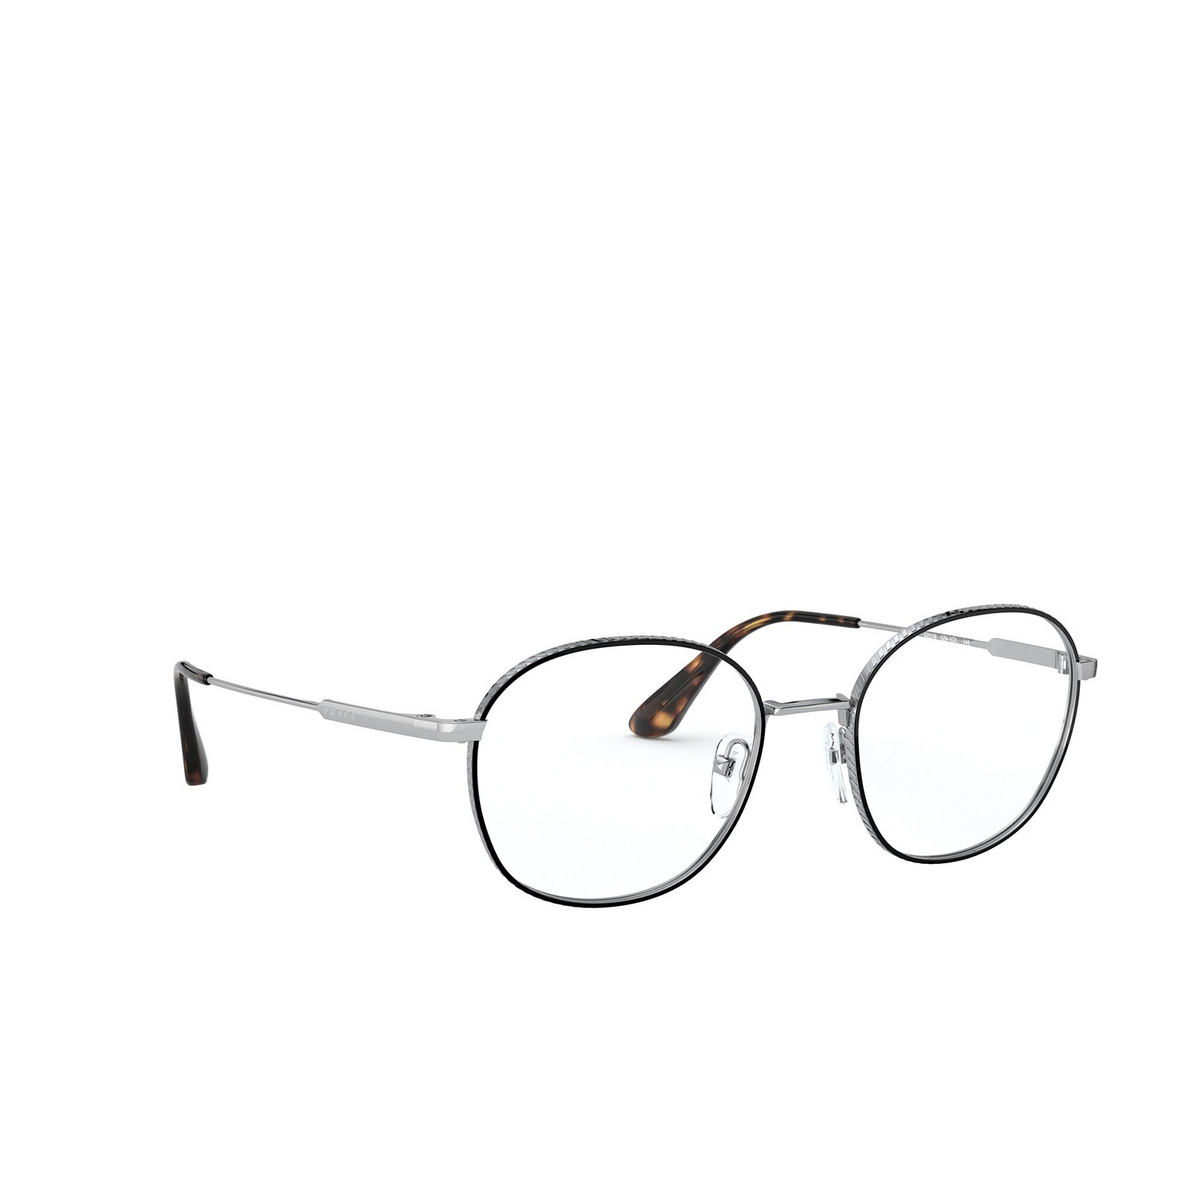 Prada® Square Eyeglasses: PR 53WV color Silver / Black 5241O1 - three-quarters view.